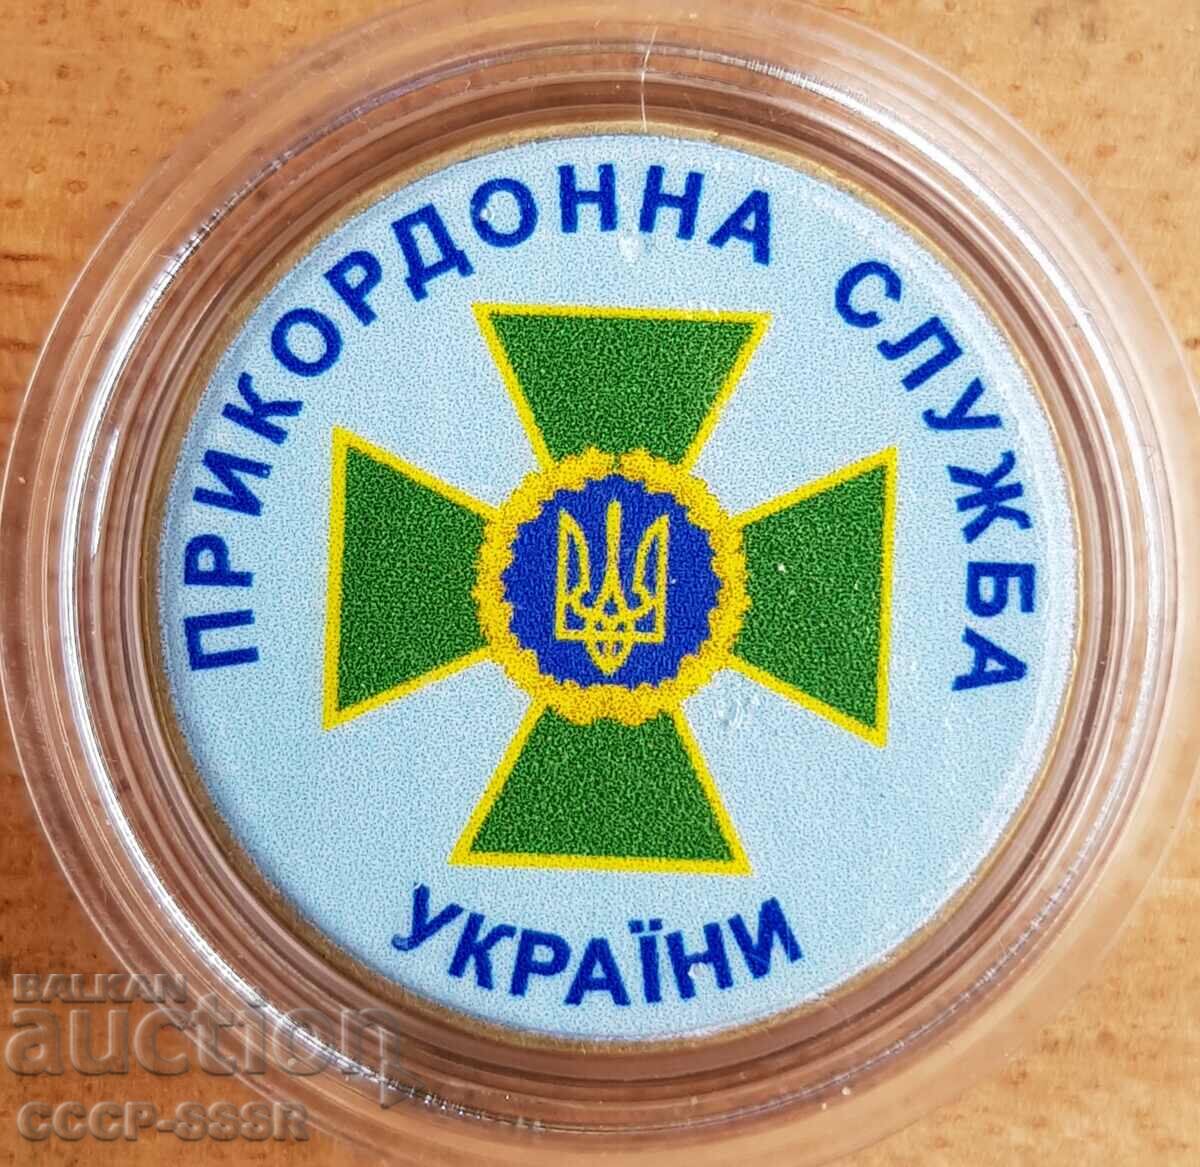 Ucraina 1 grivne, Serviciul de Frontieră Ucraina, problema limită